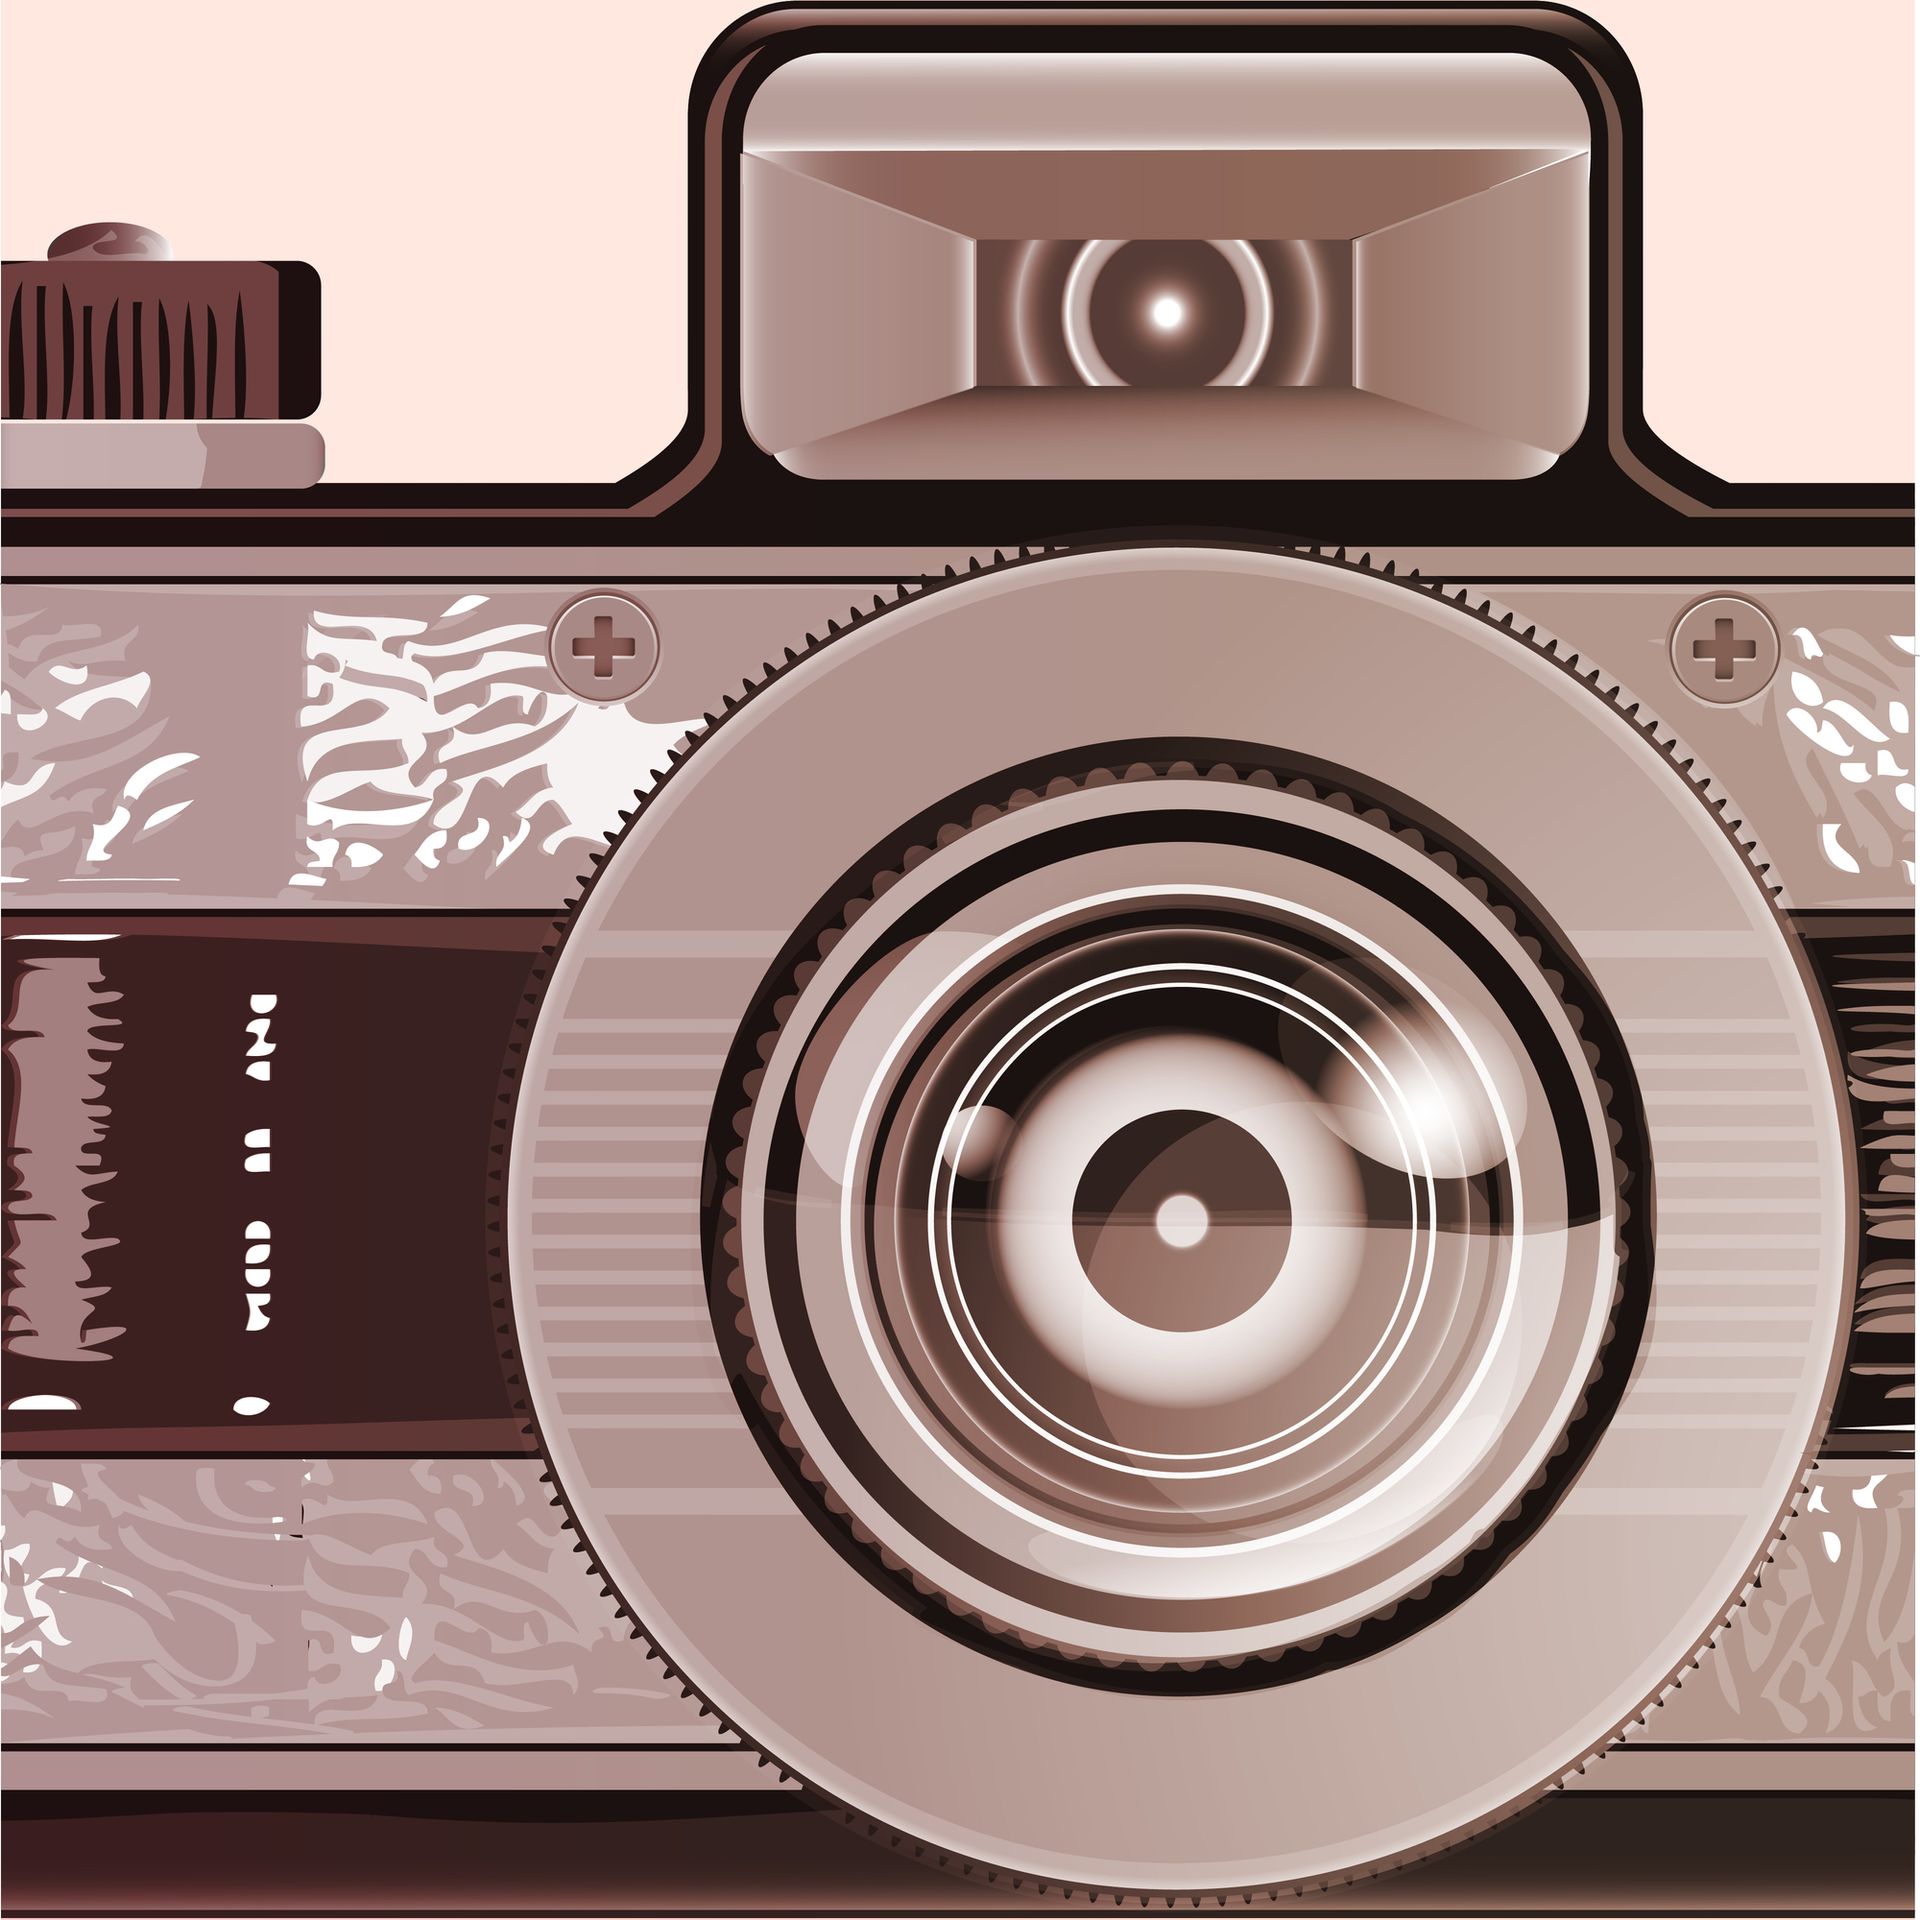 Illustratie van fototoestel in sepia-tinten bij blog over stockfoto's en rechtenvrije afbeeldingen.